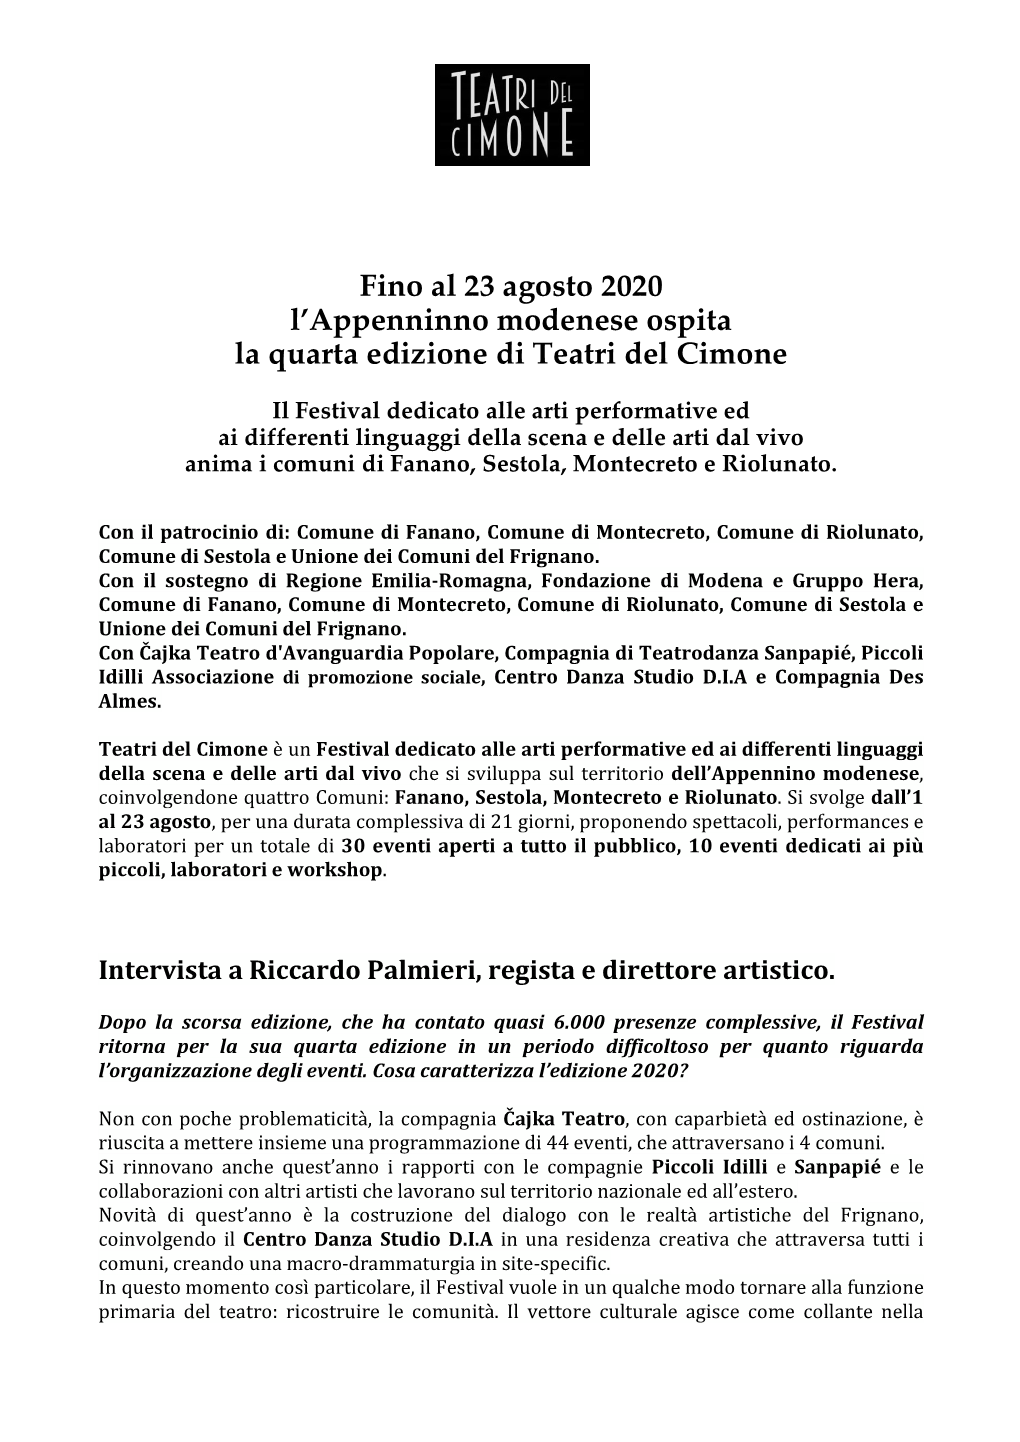 Fino Al 23 Agosto 2020 L'appenninno Modenese Ospita La Quarta Edizione